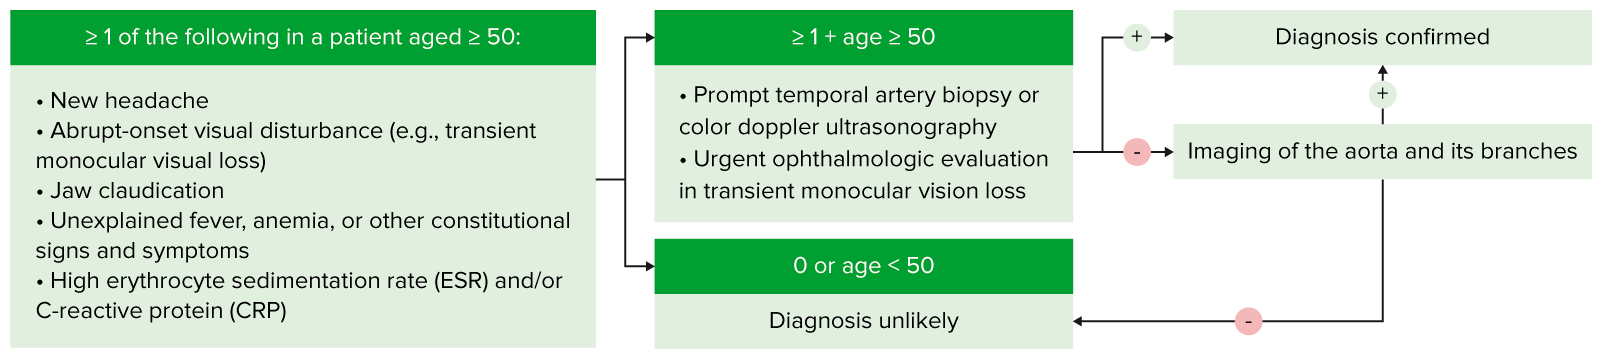 Algoritmo de diagnóstico de la arteritis temporal